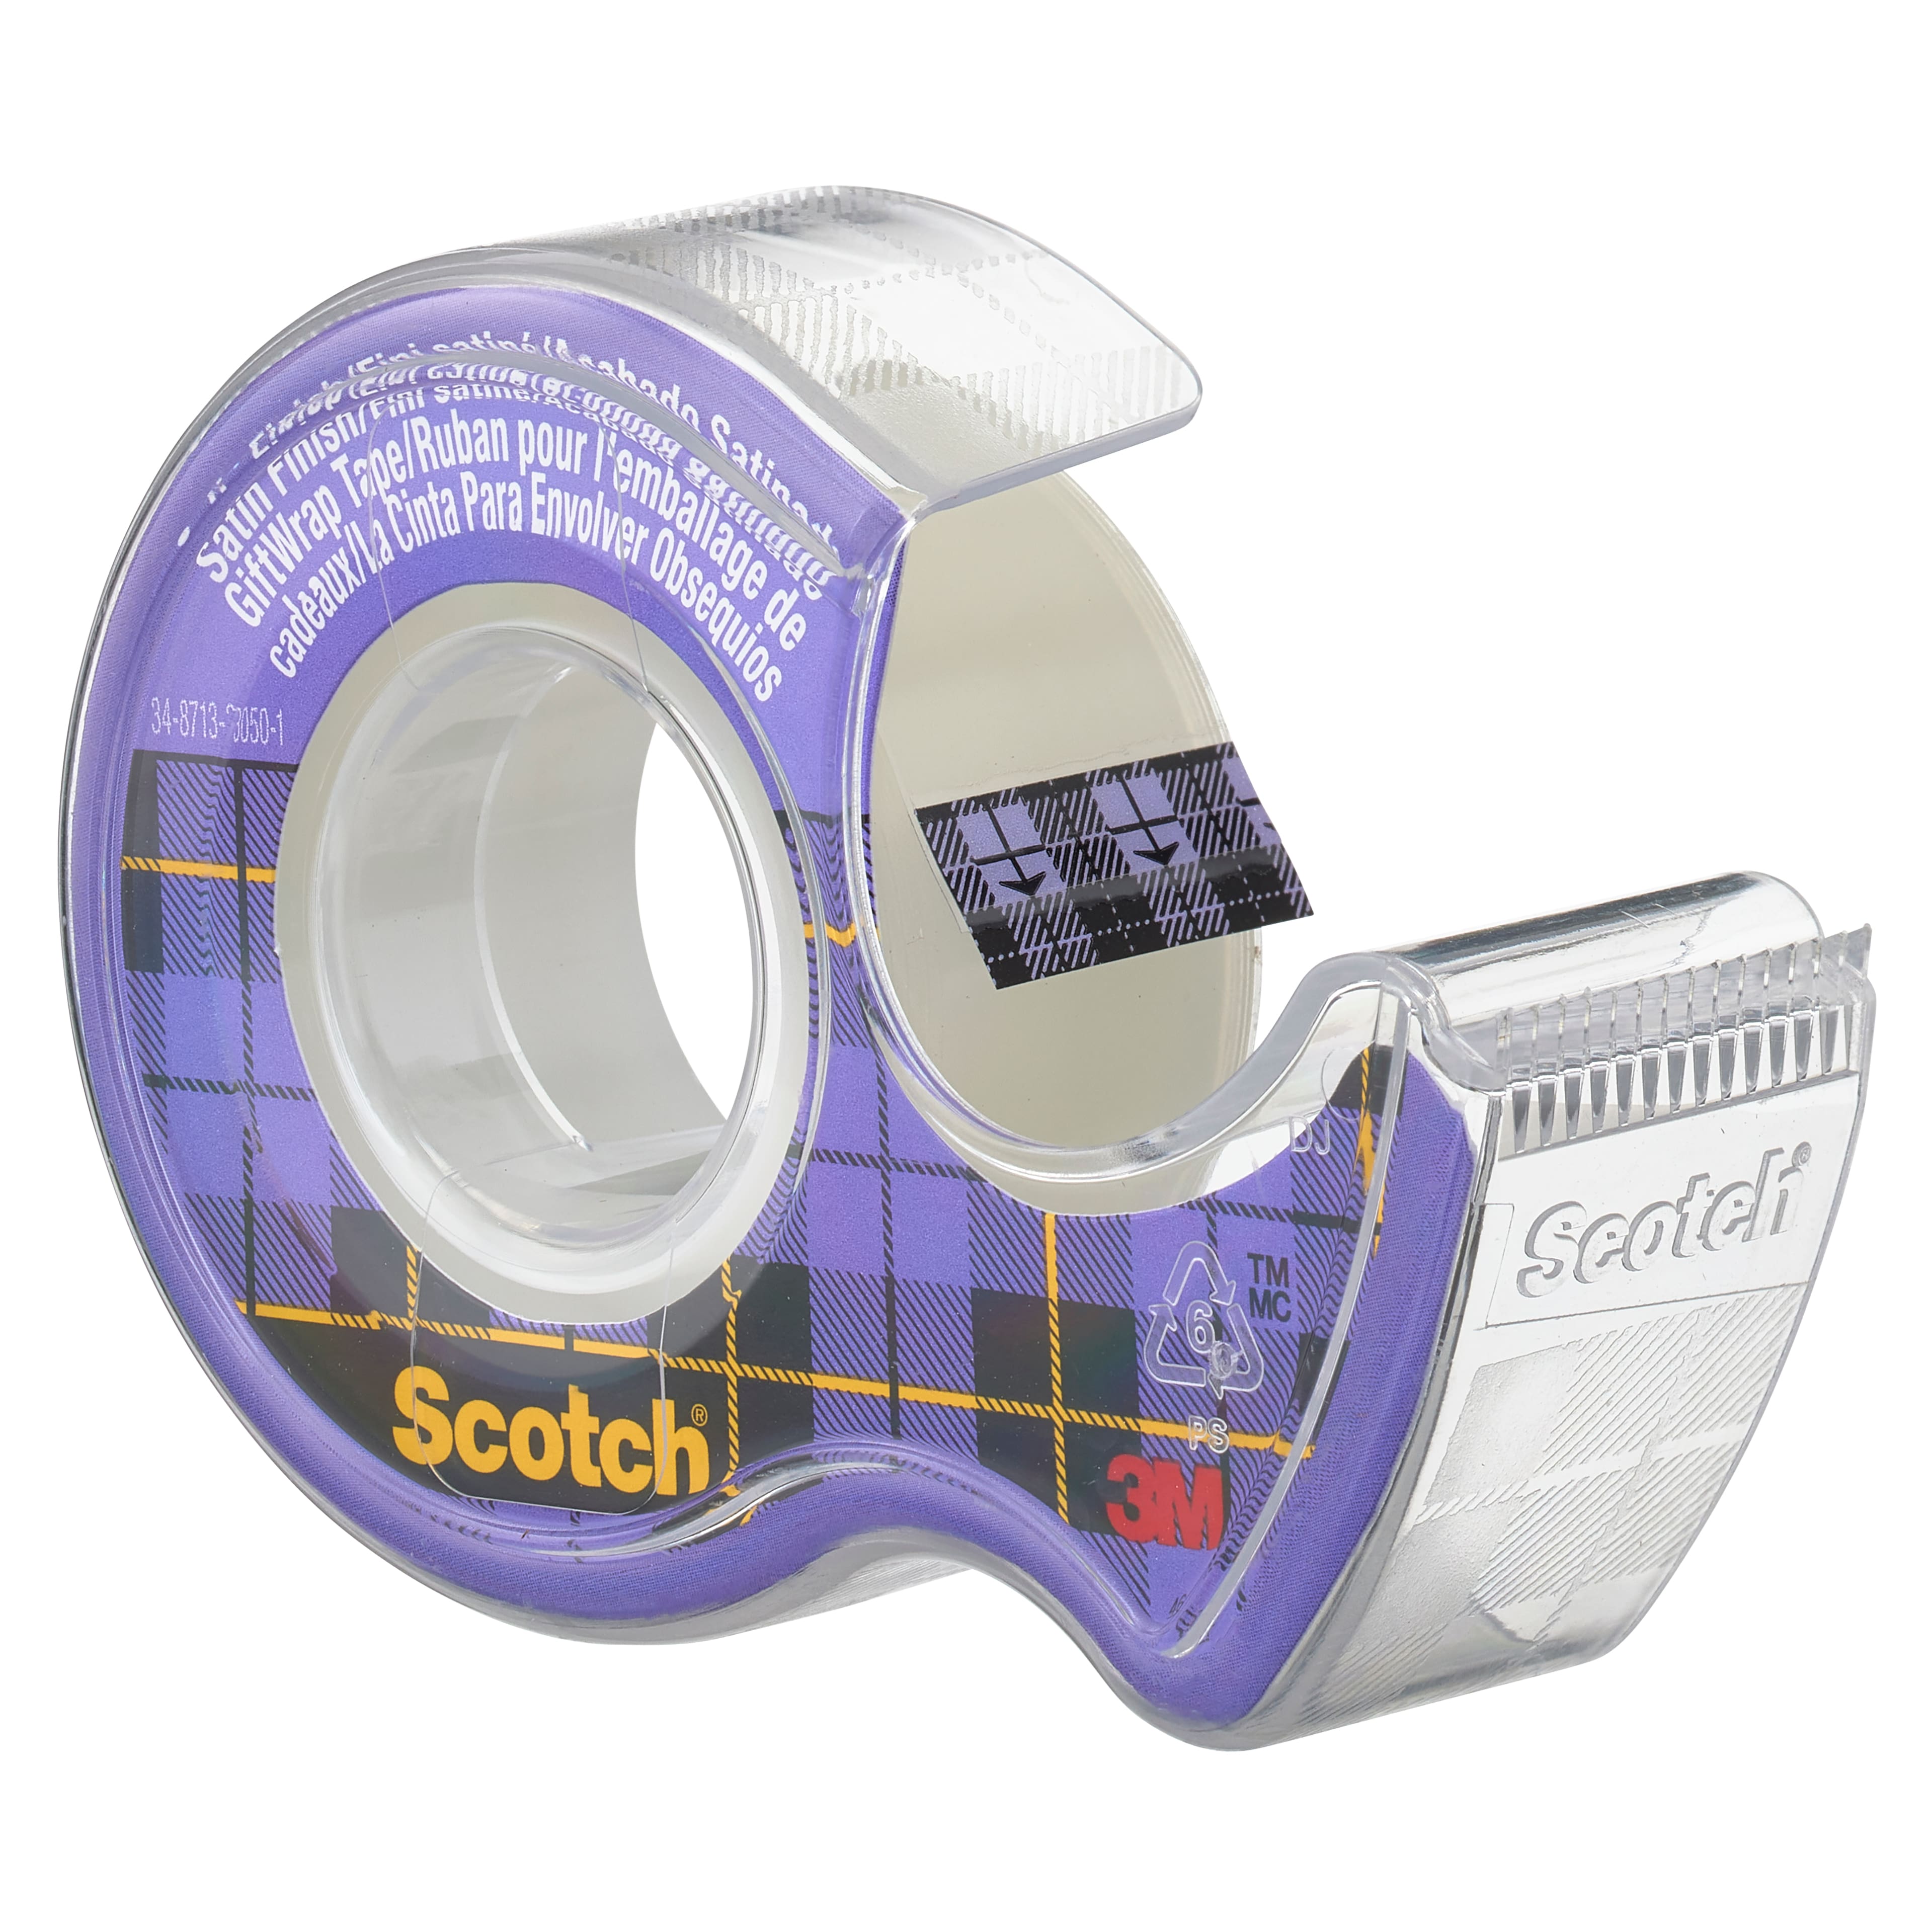 Scotch® GiftWrap Tape 